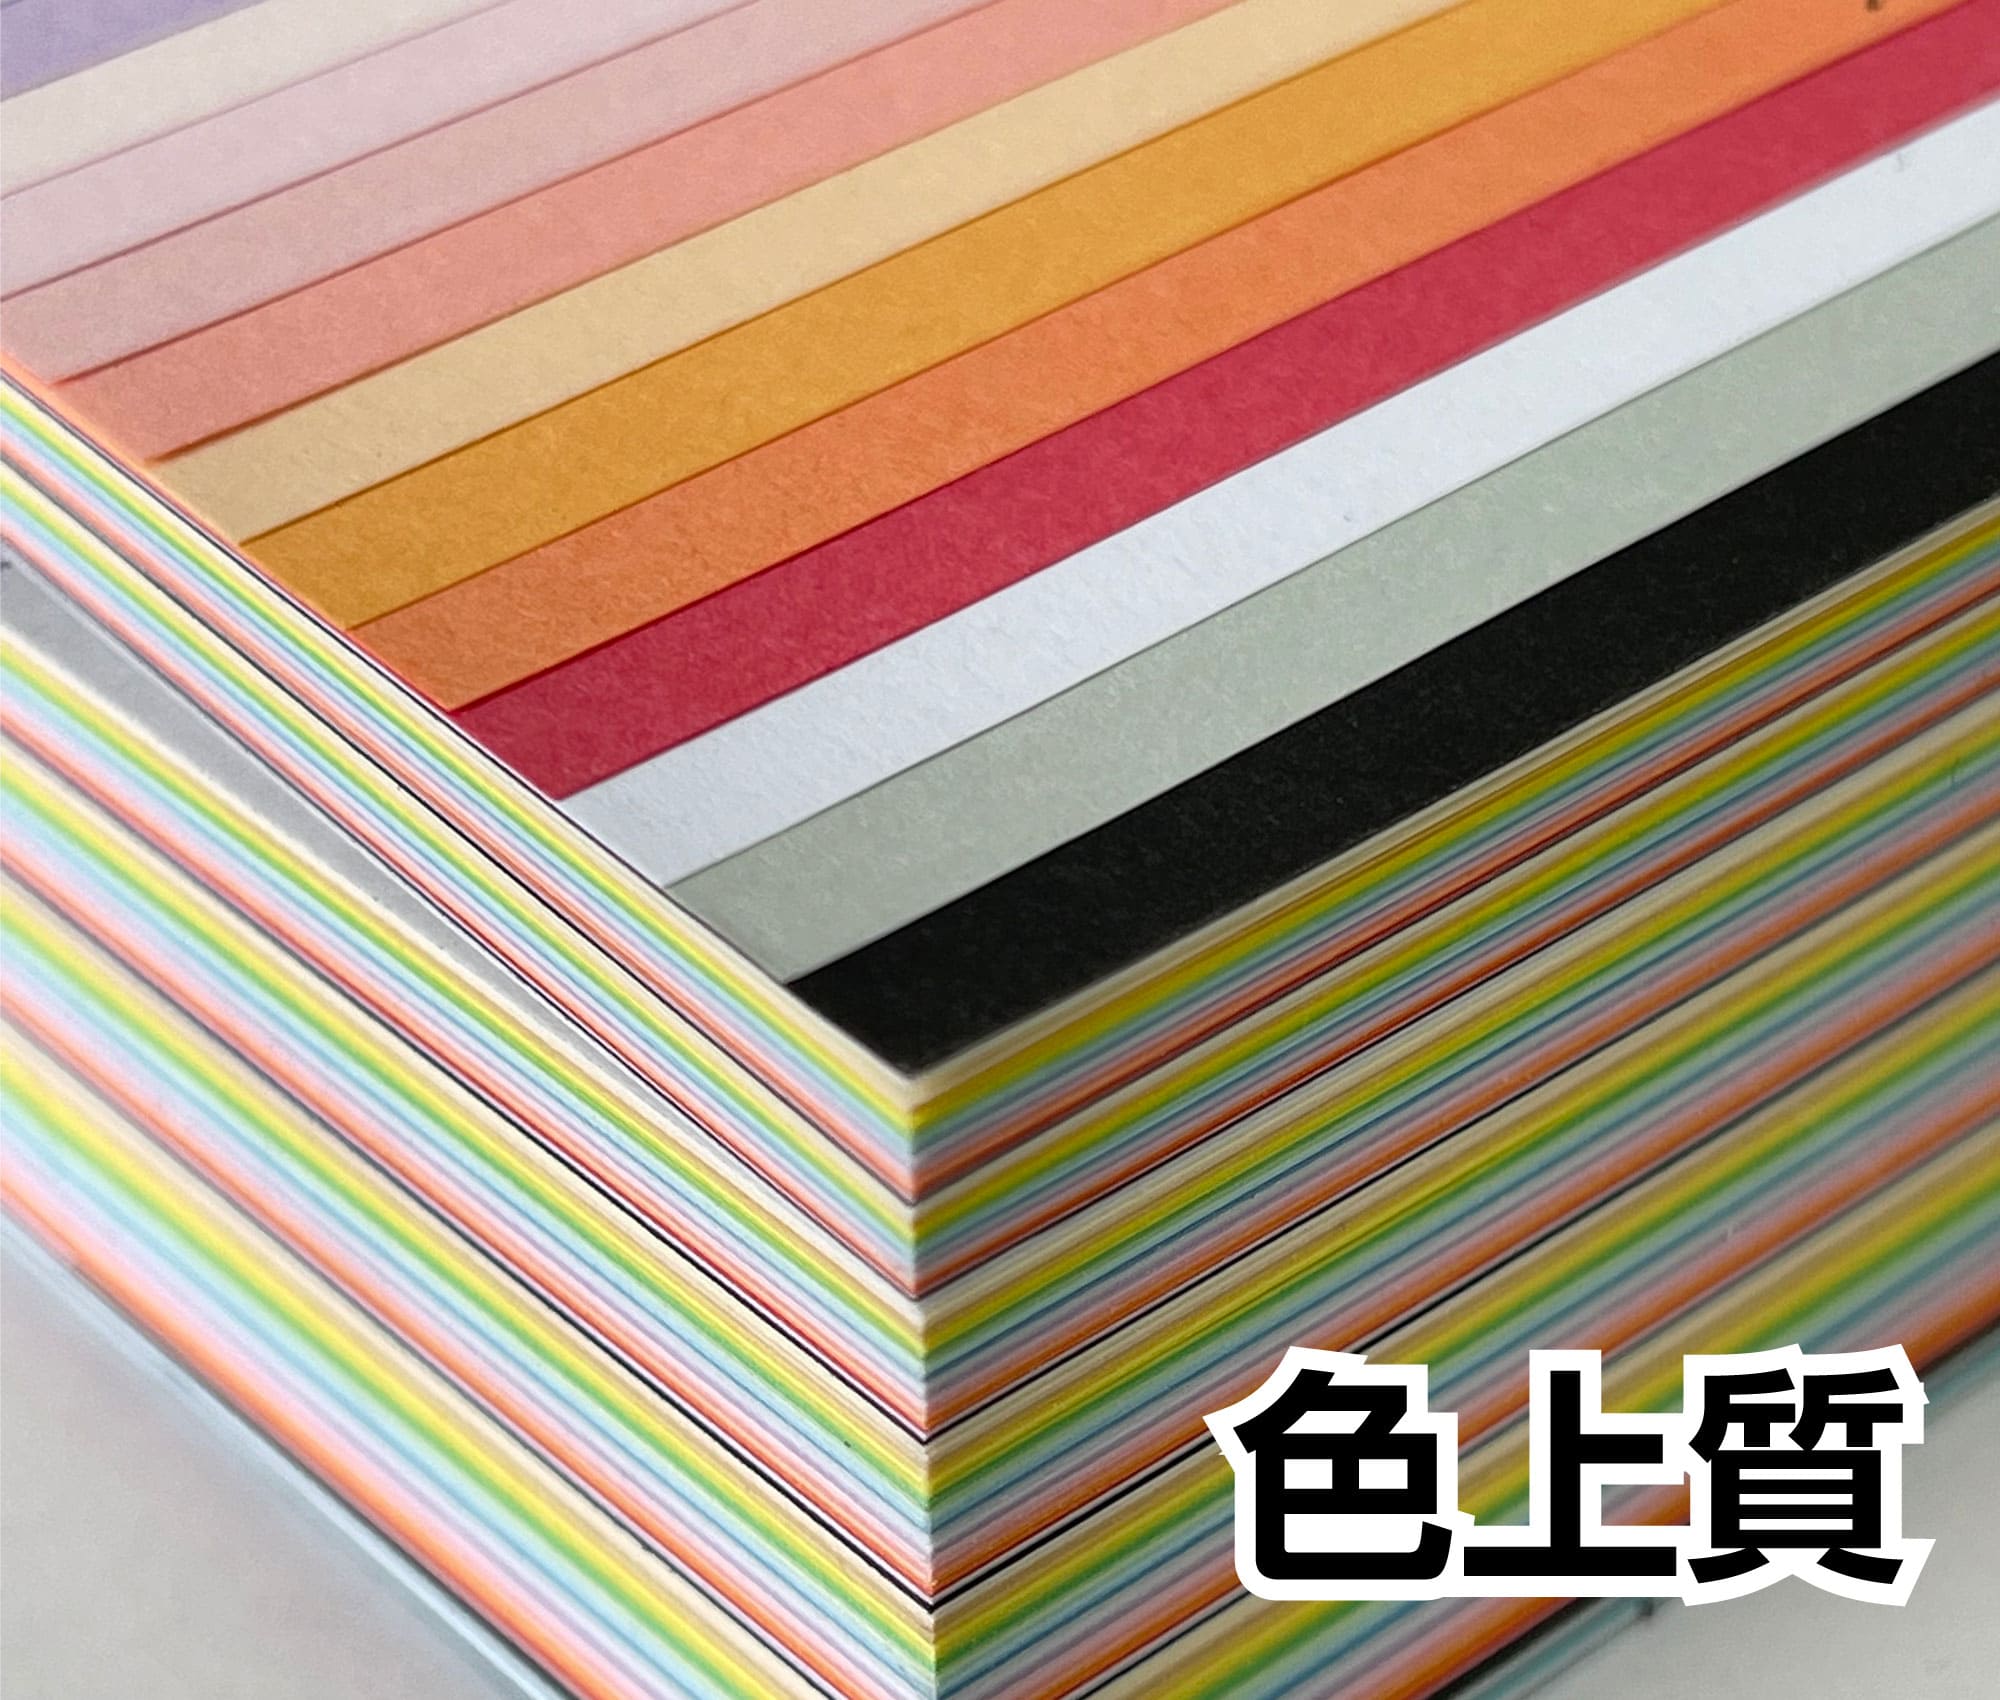 超美品の あす楽 色上質紙 中厚口 A4 1000枚 ×4色 国産 カラーペーパー 選べる 32色 カラーコピー用紙 br